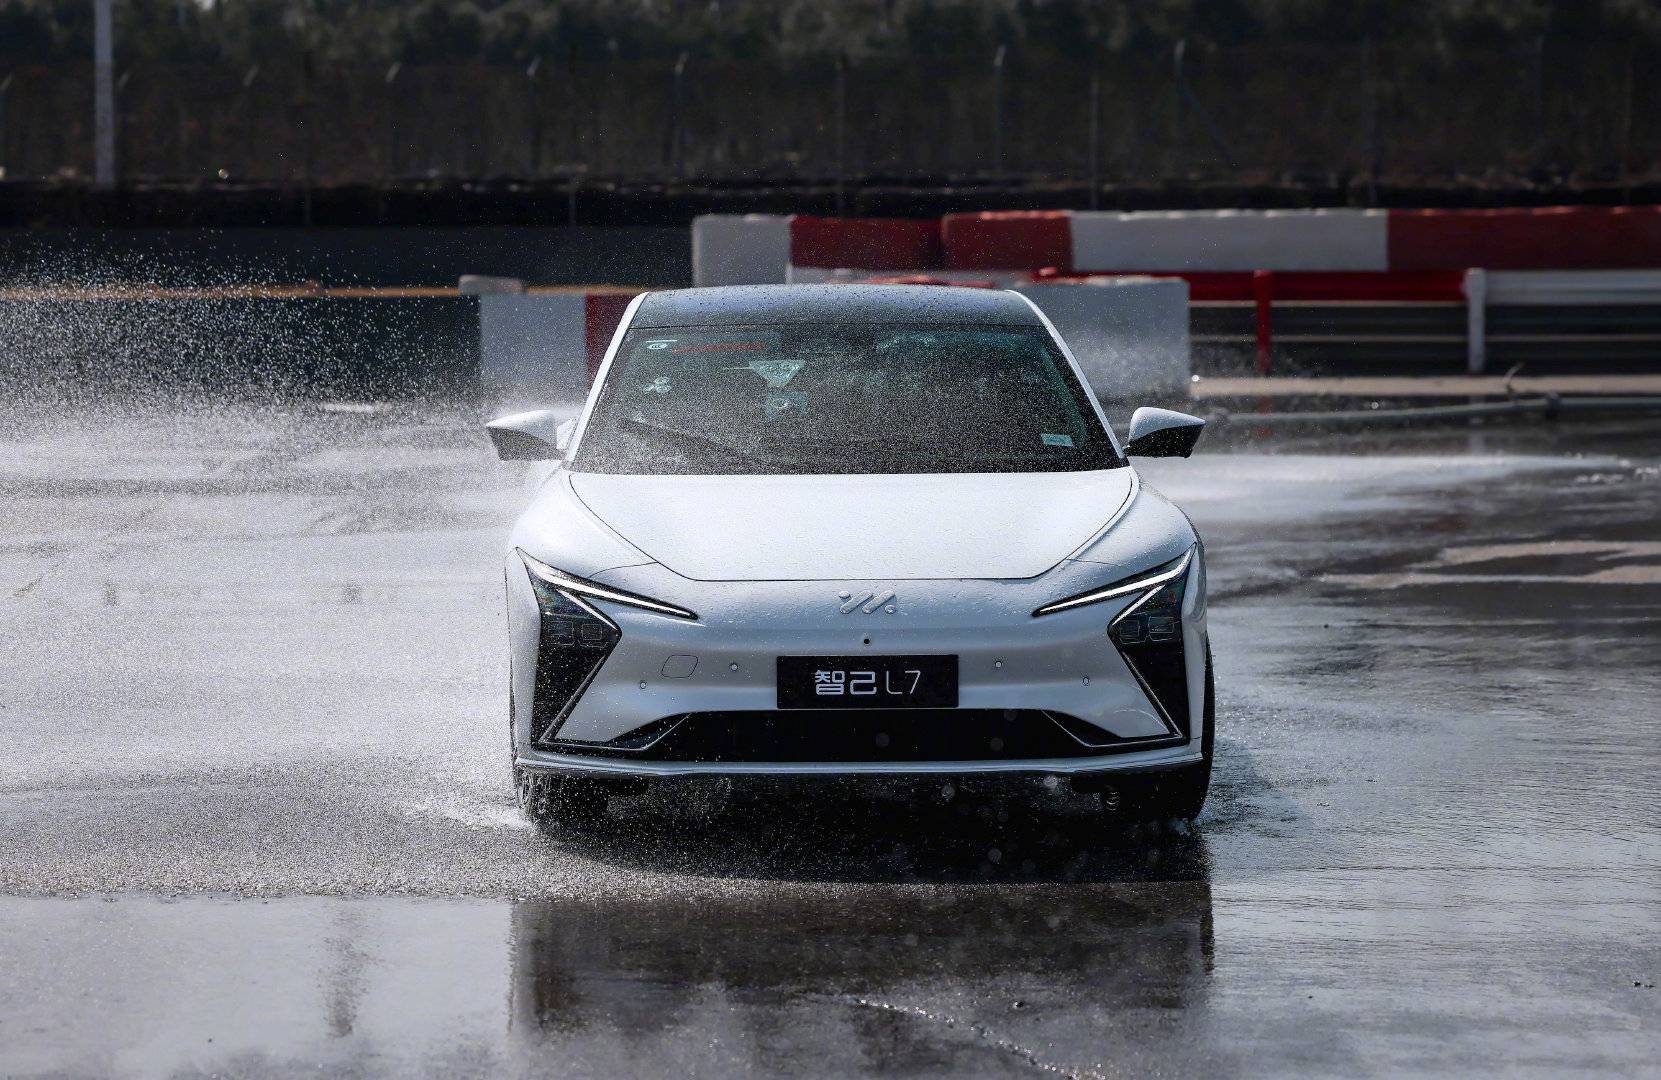 l71 - Toyota lancerà la versione a mano di Supra / Hyundai richiama veicoli a idrogeno a causa del rischio di incendio / Lamborghini nuovo test drive cloud Maverick